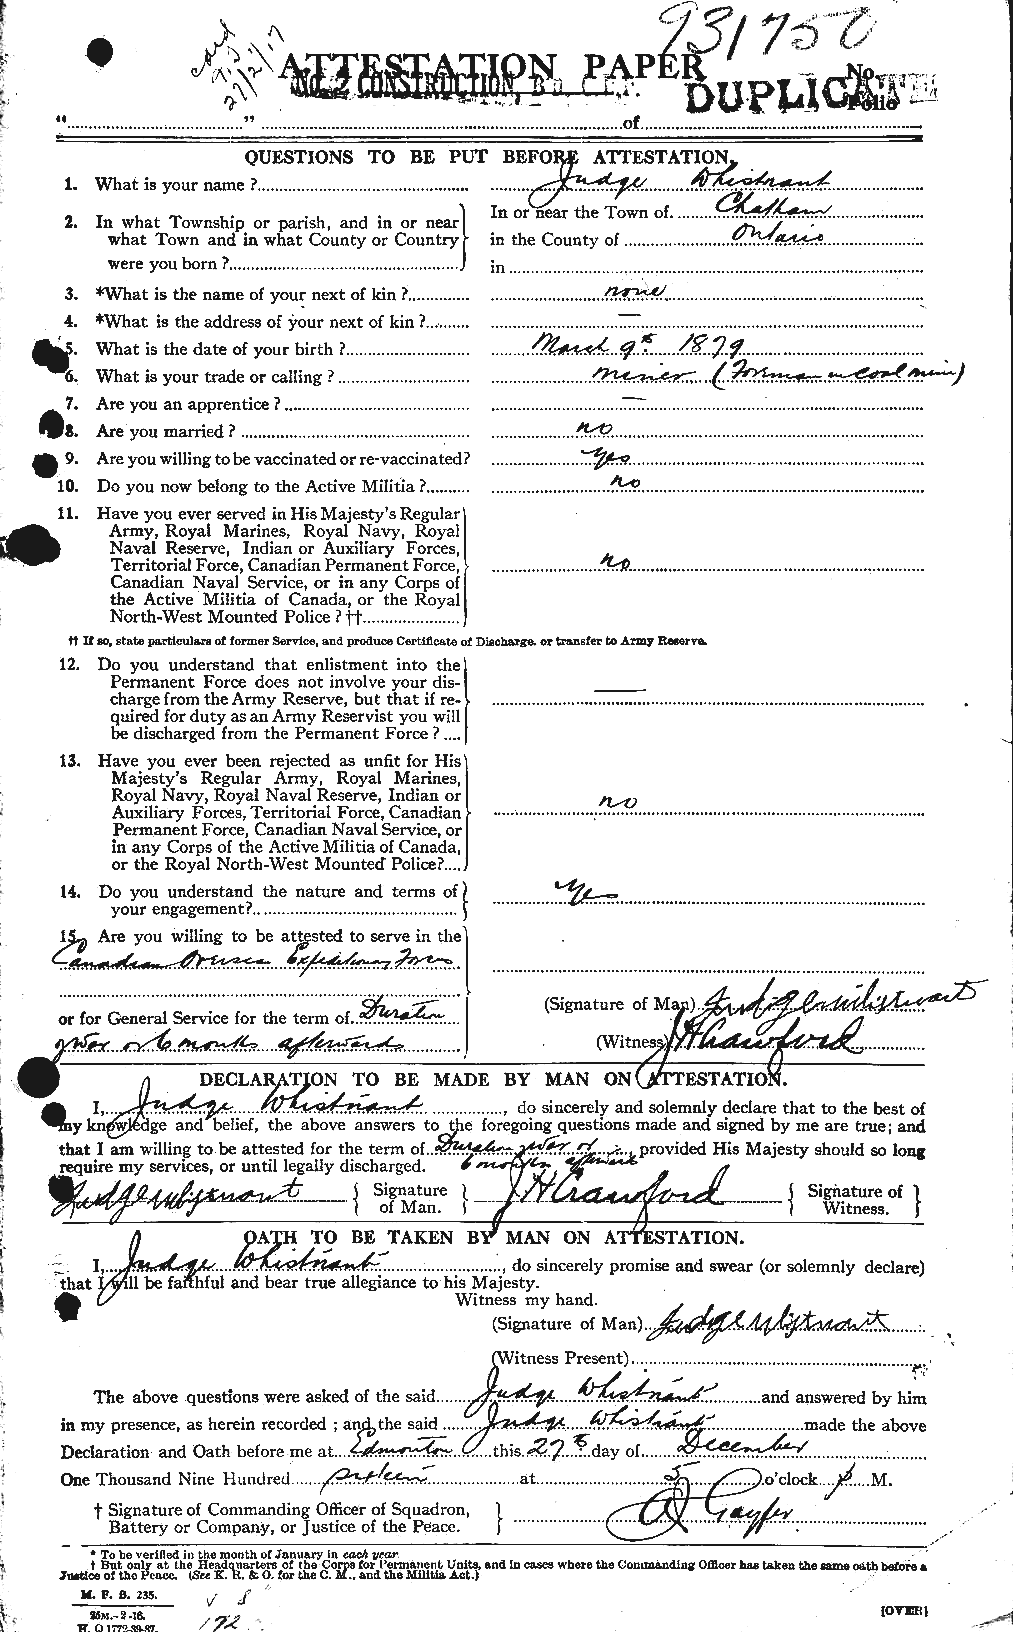 Dossiers du Personnel de la Première Guerre mondiale - CEC 668790a